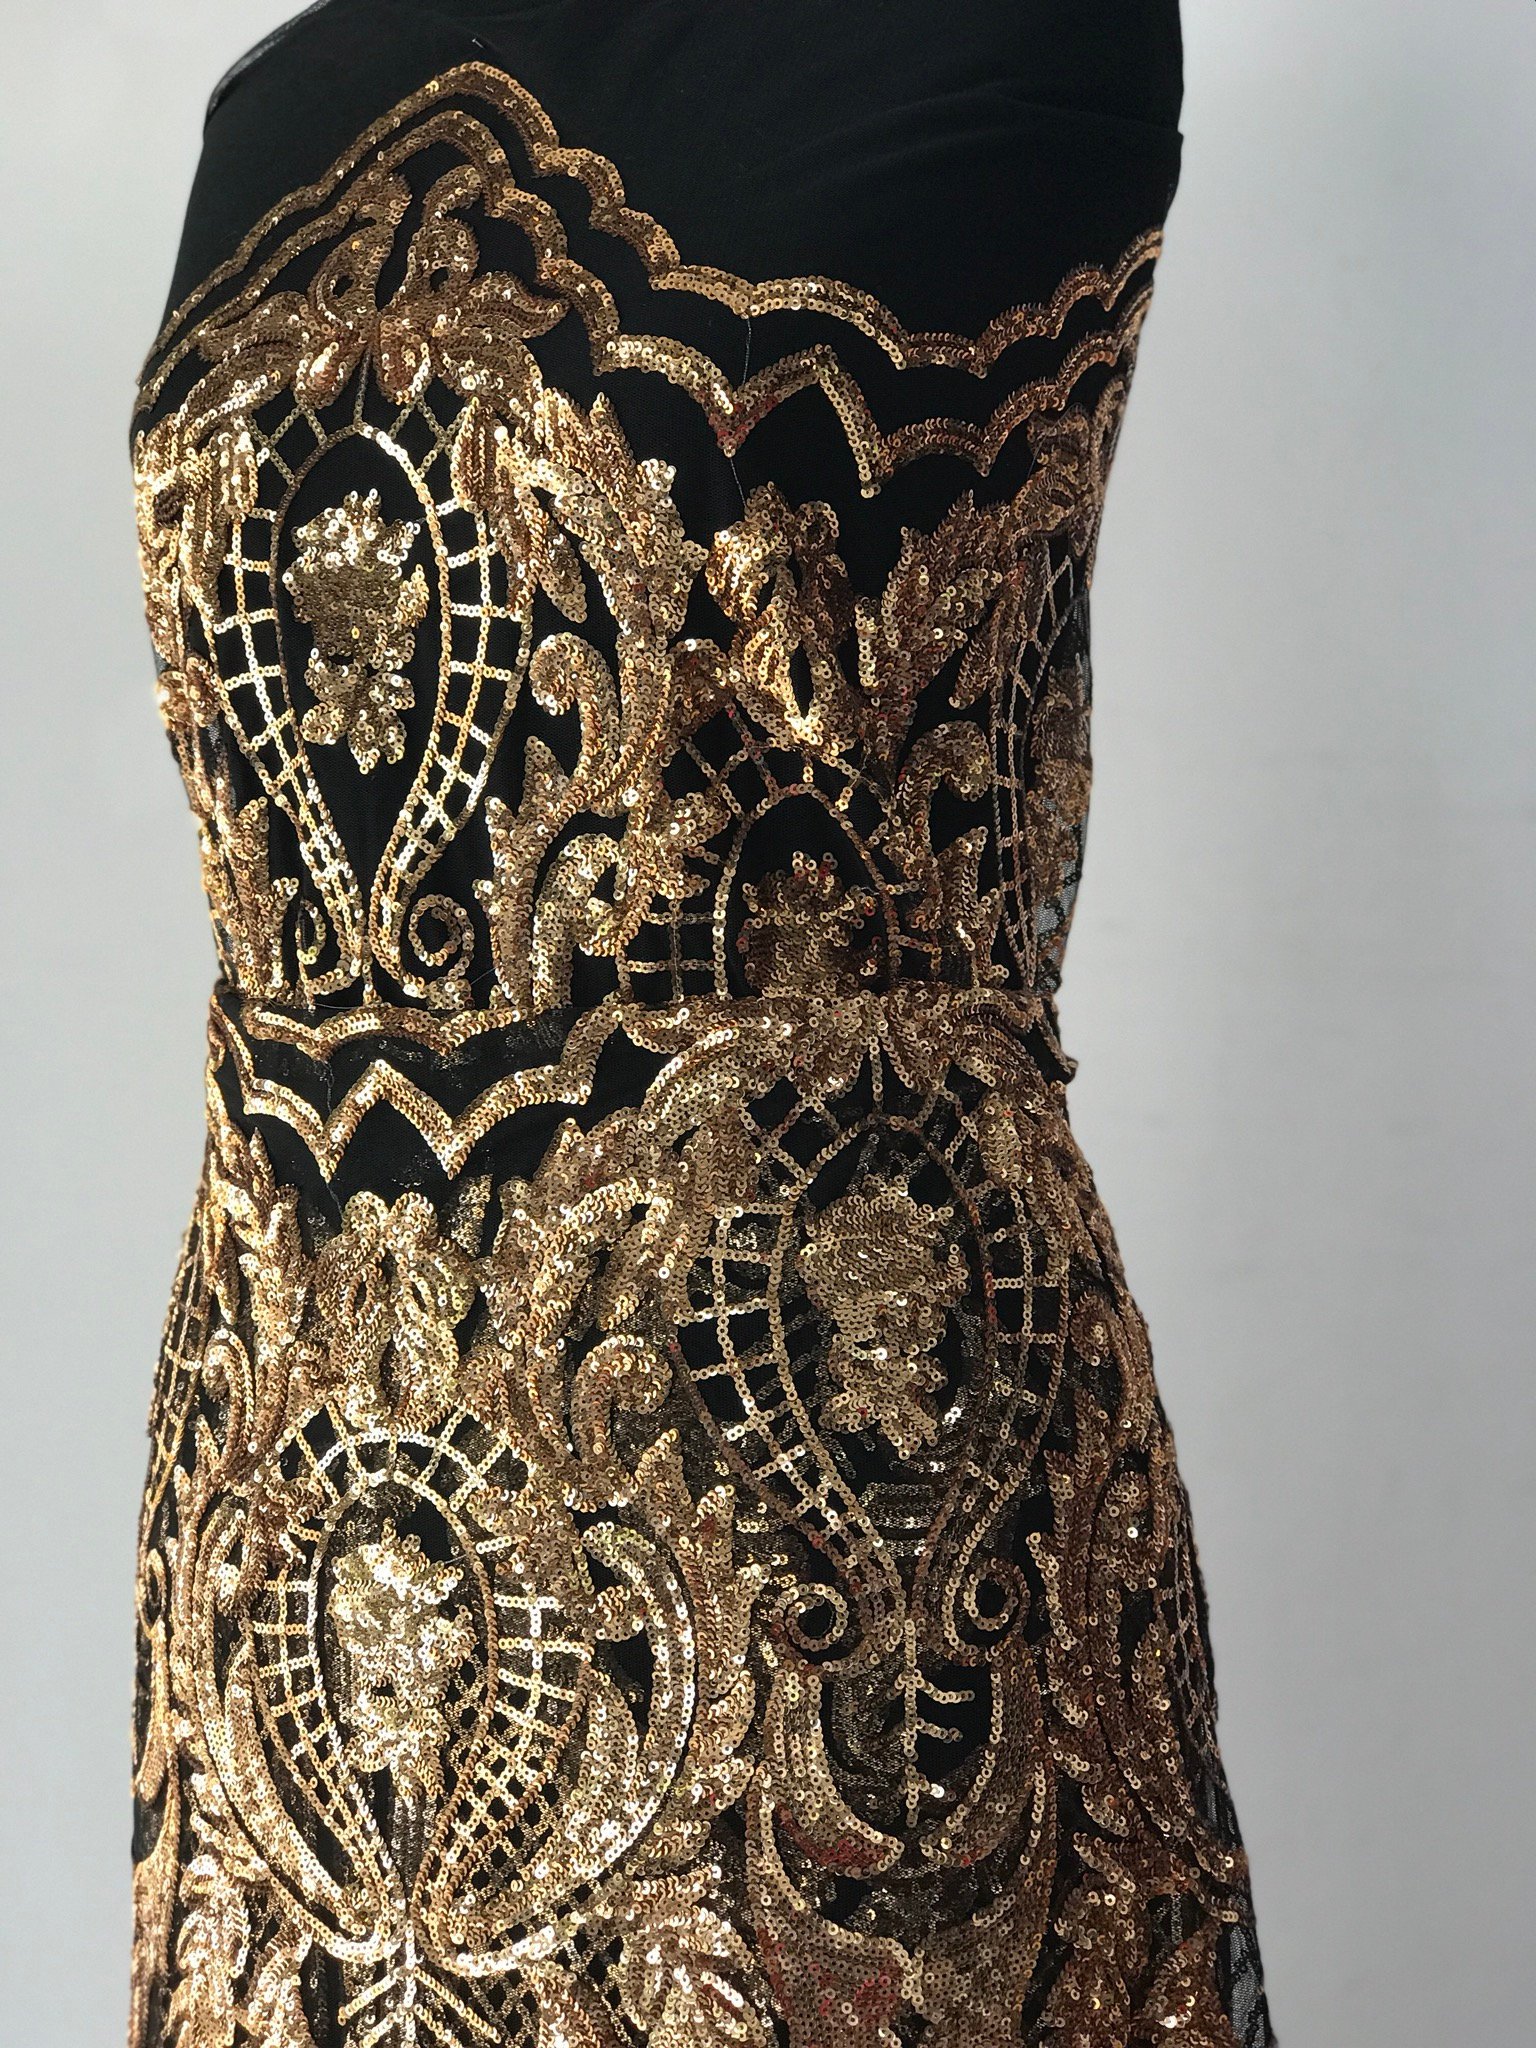 Damask lace, gold on black sequins lace, rose gold sequins on black tulle, Baroque design bridal